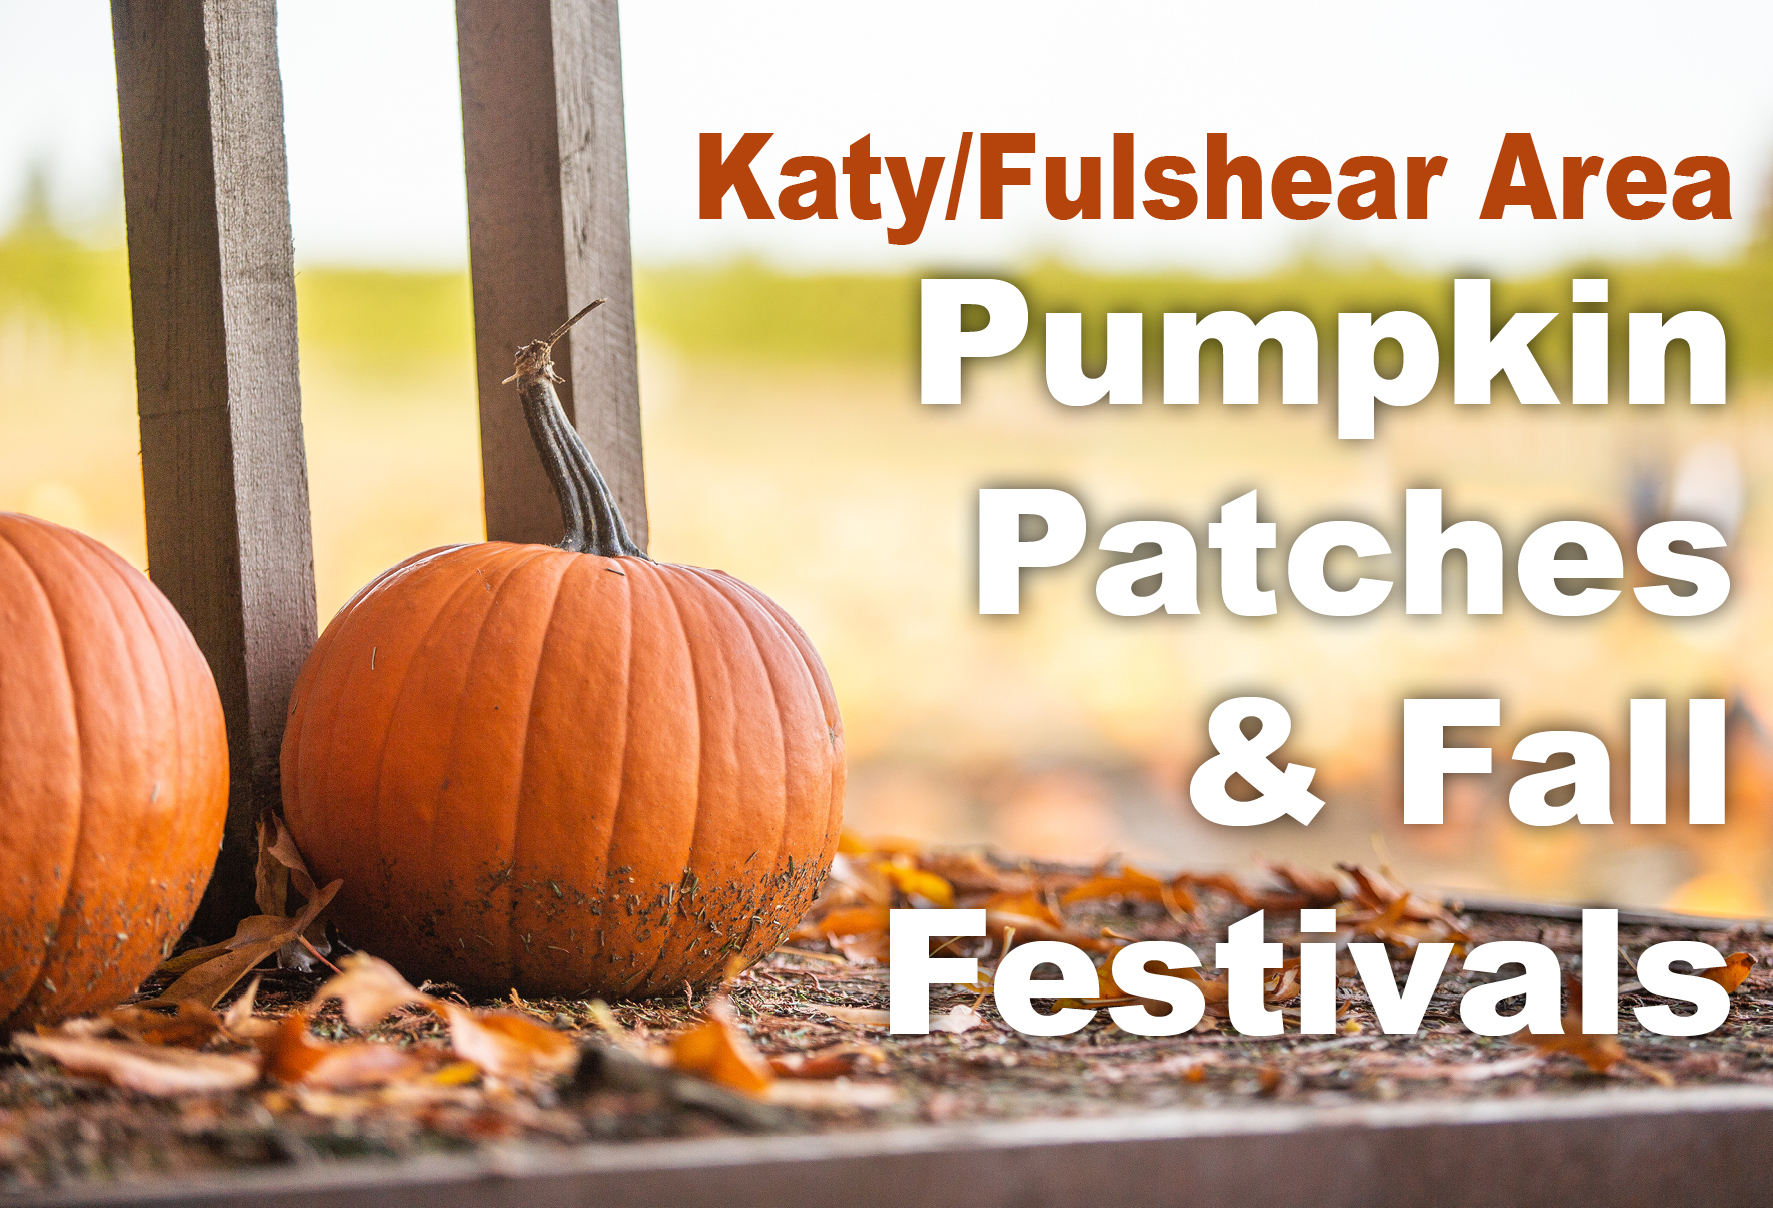 Pumpkin Patches & Fall Festivals